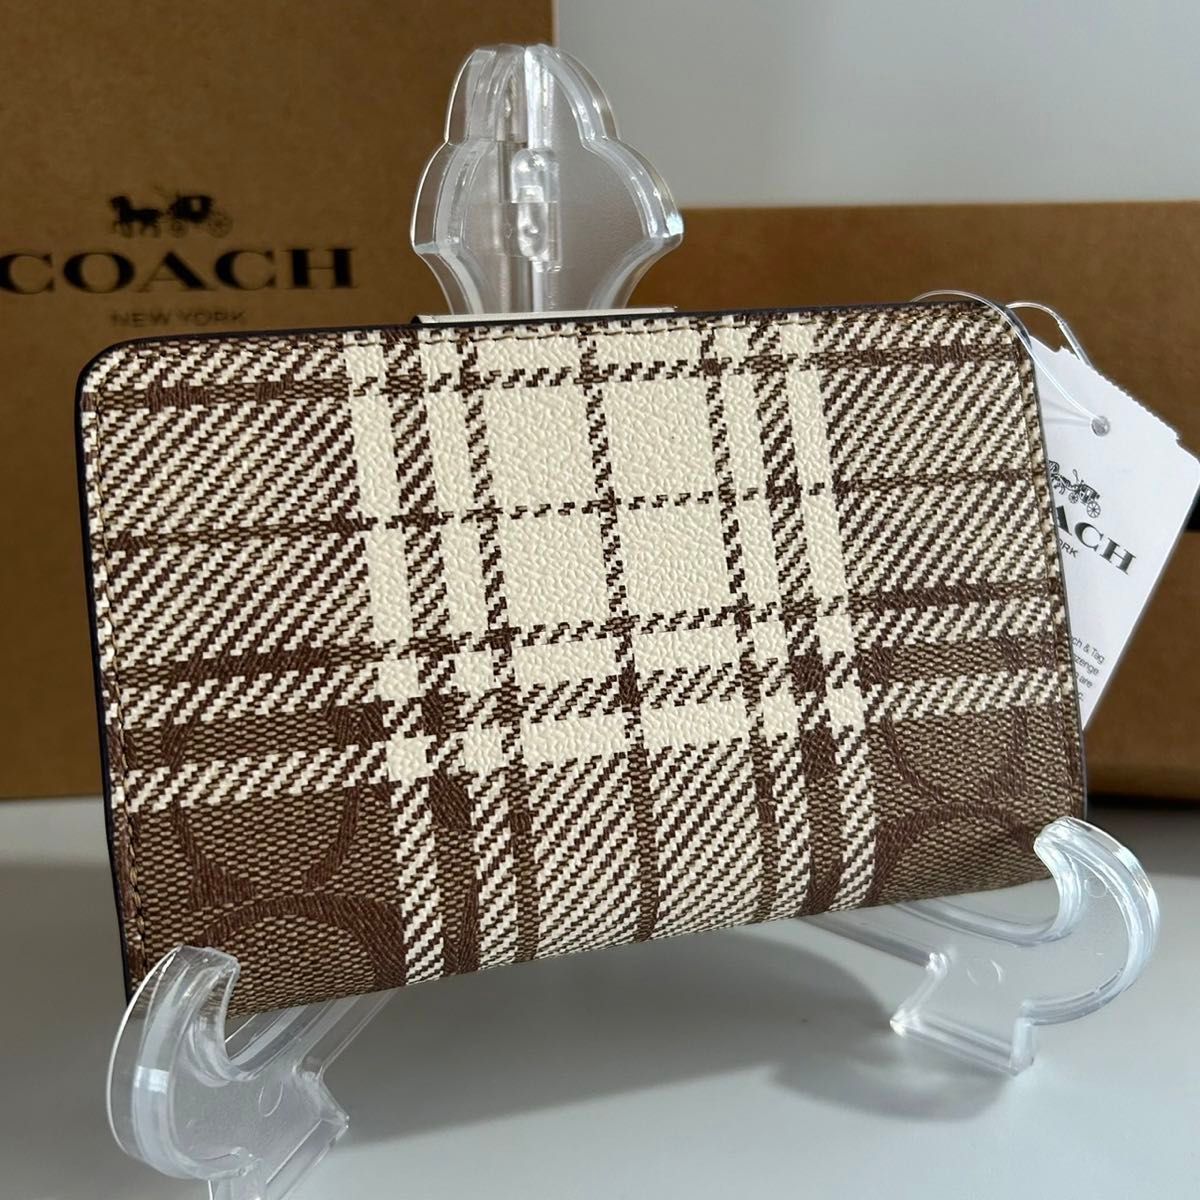 COACH 二つ折り財布 C6011 カーキ×チョークマルチ アウトレット